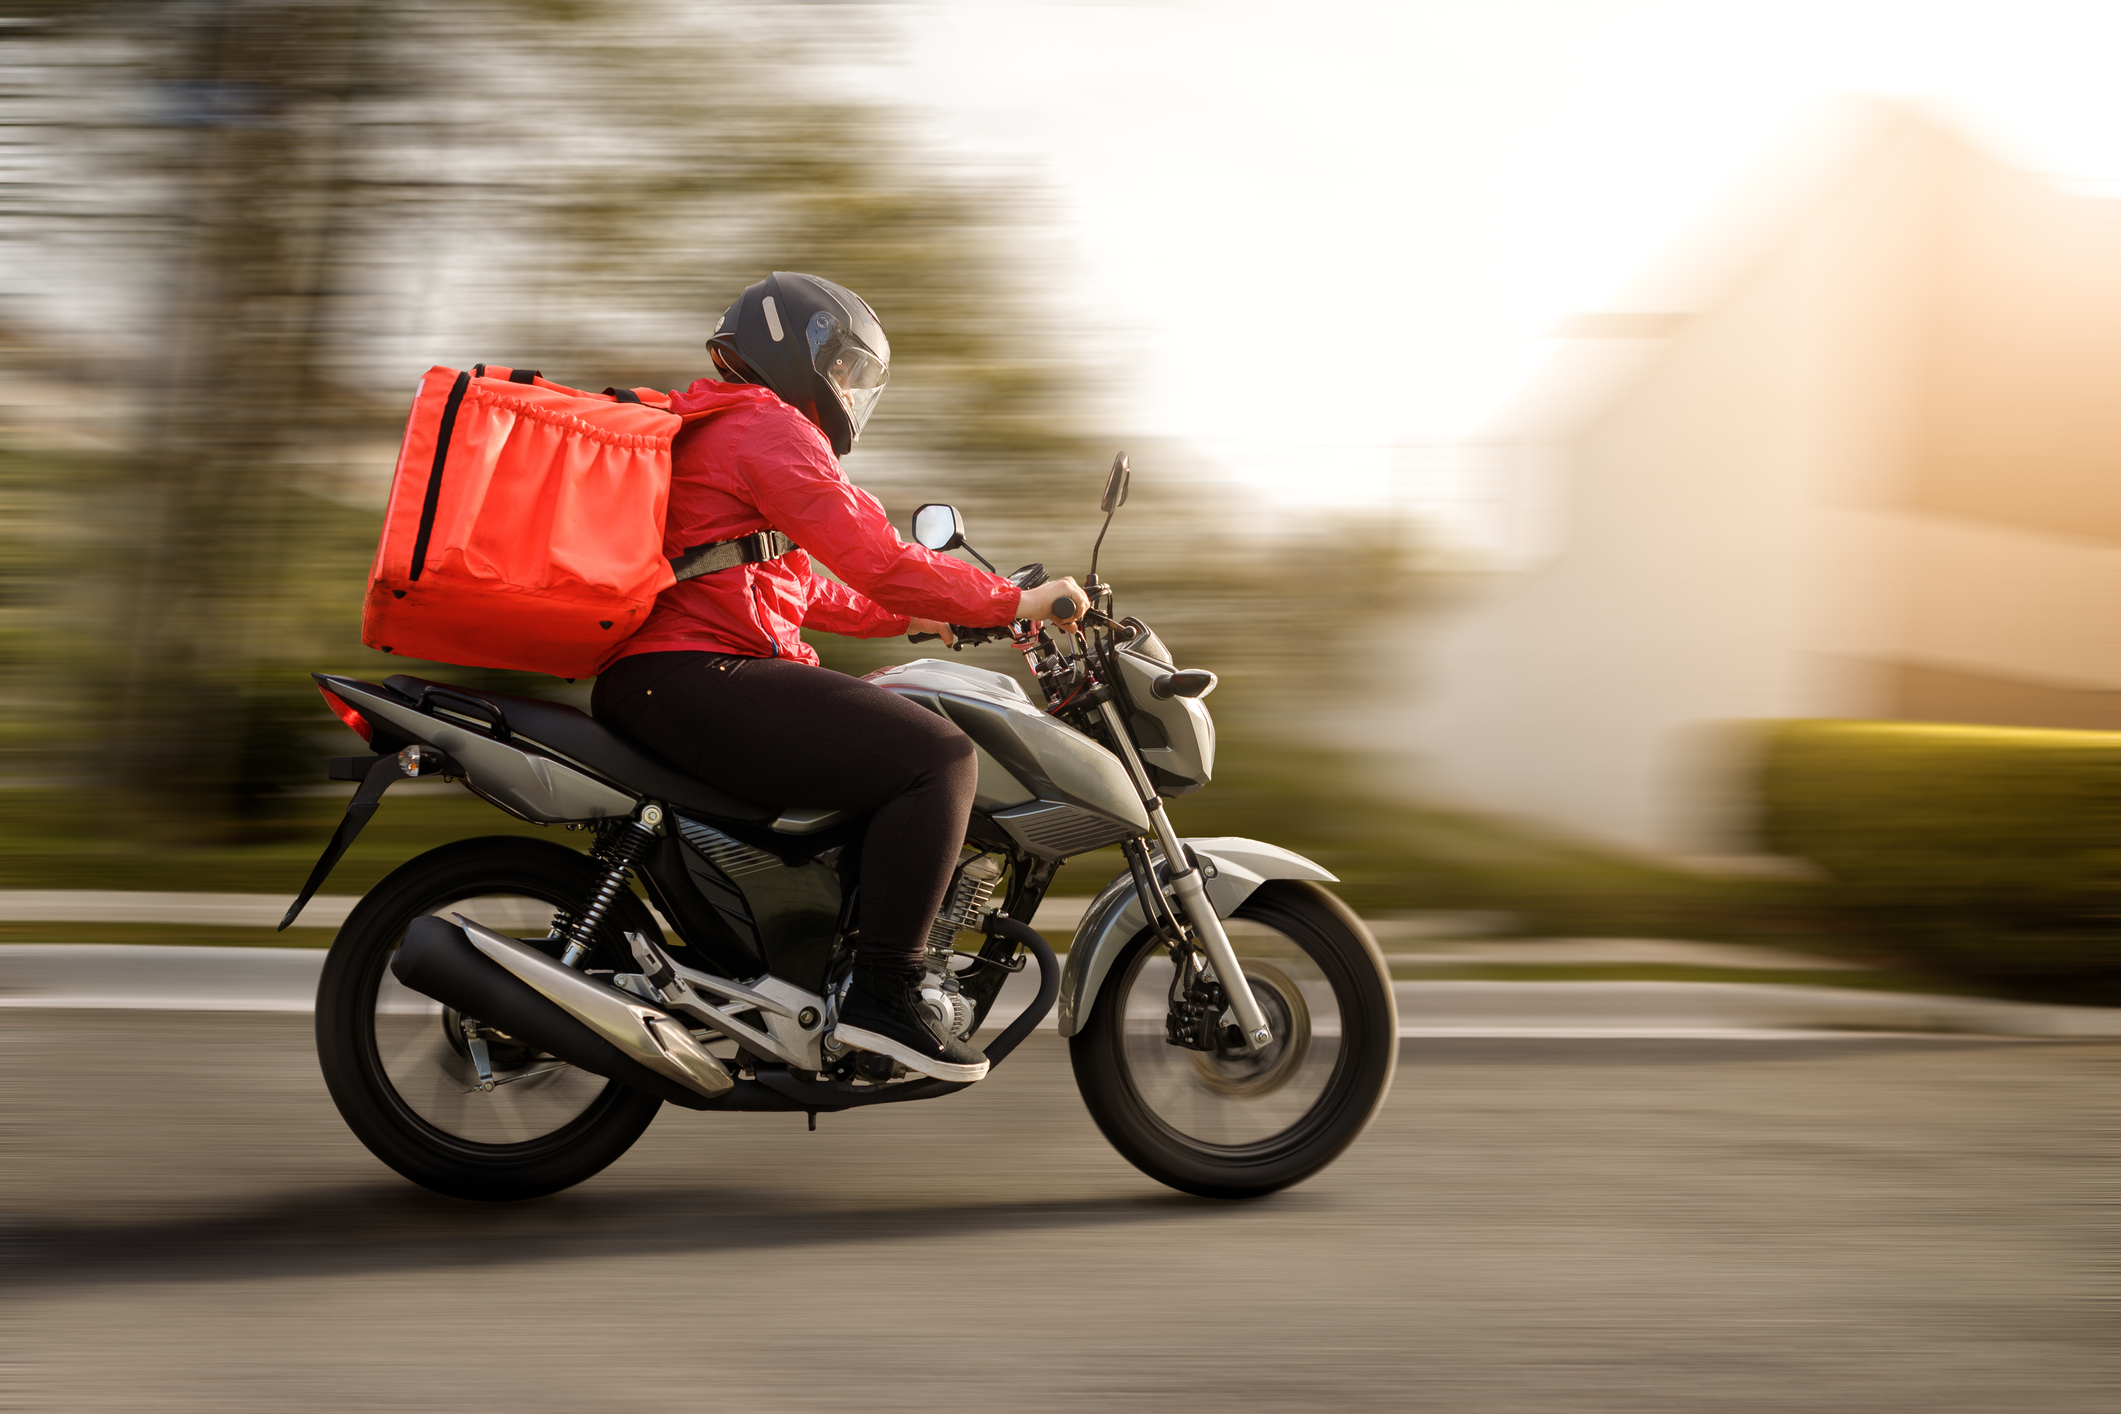 Imagem: motoqueiro de entregas em alta velocidade